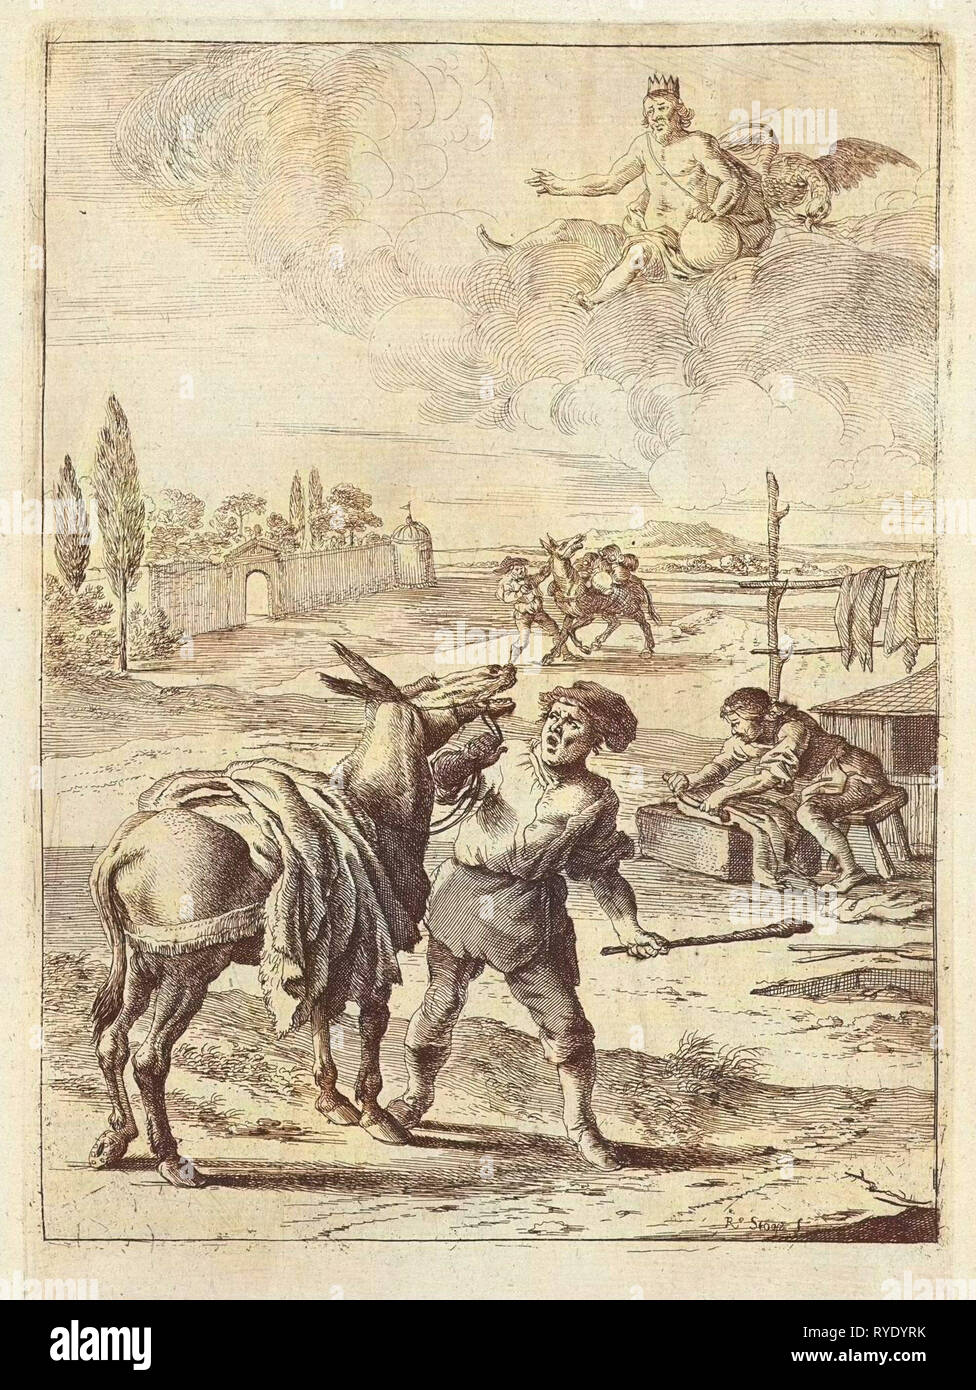 Il mito di Giove e l'asino, Dirk Stoop, John Ogilby, 1665 Foto Stock